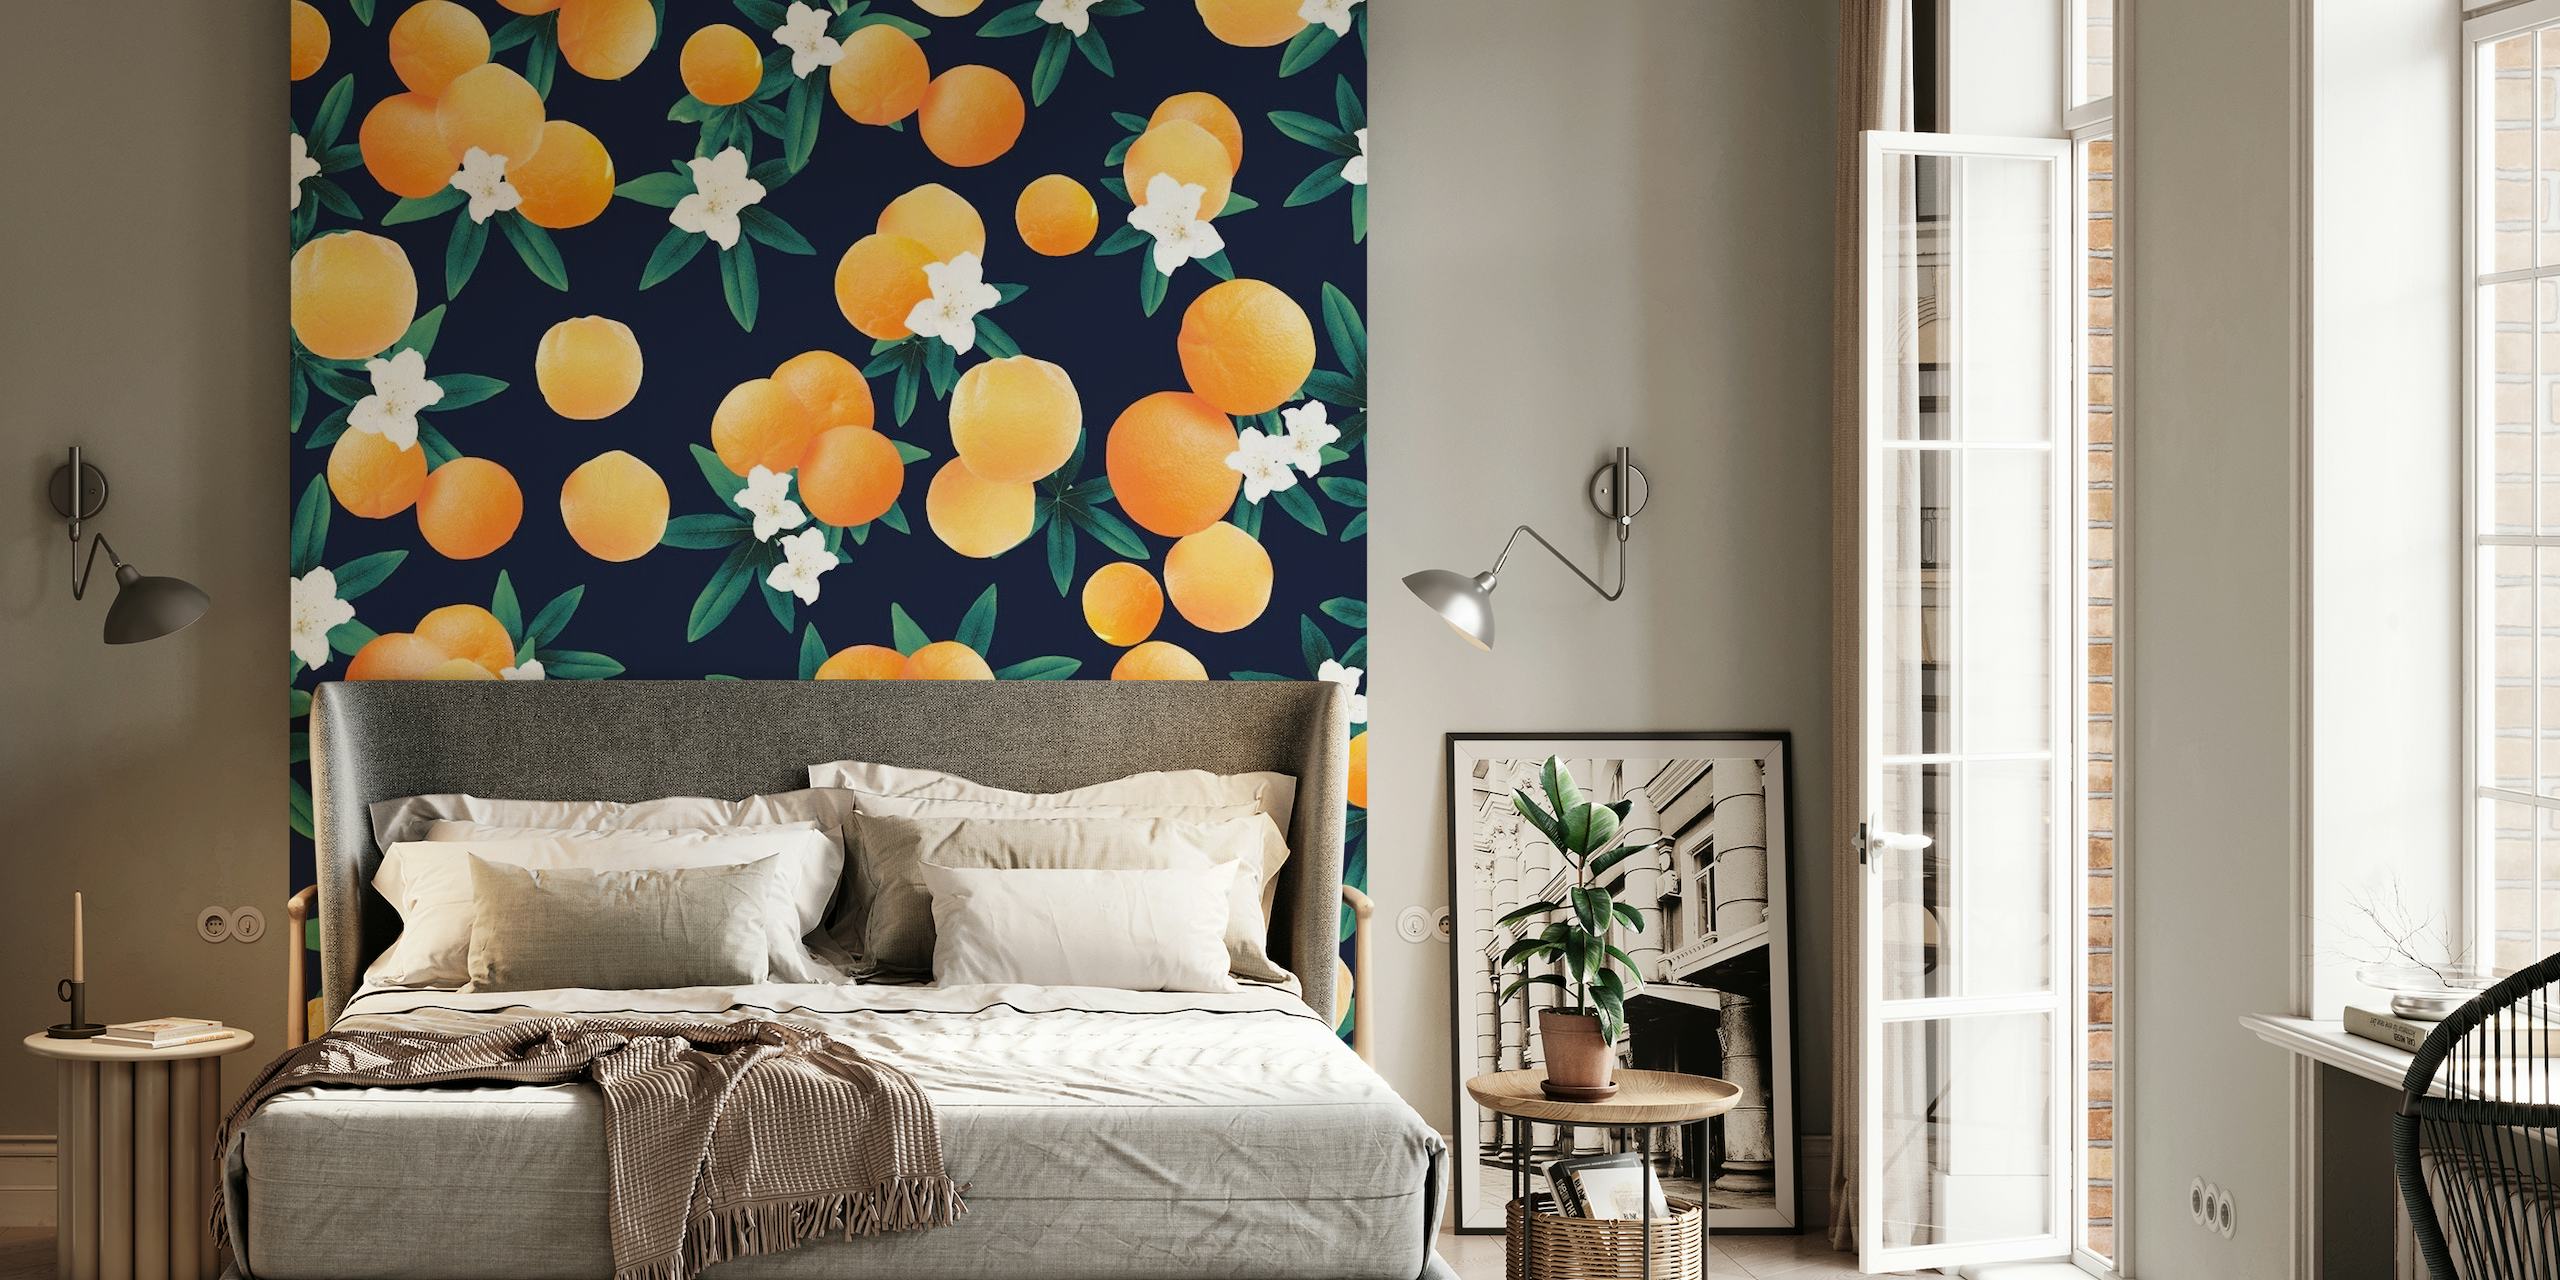 Fototapet med ljusa orange citrusfrukter och vita blommor mot en mörkblå bakgrund.